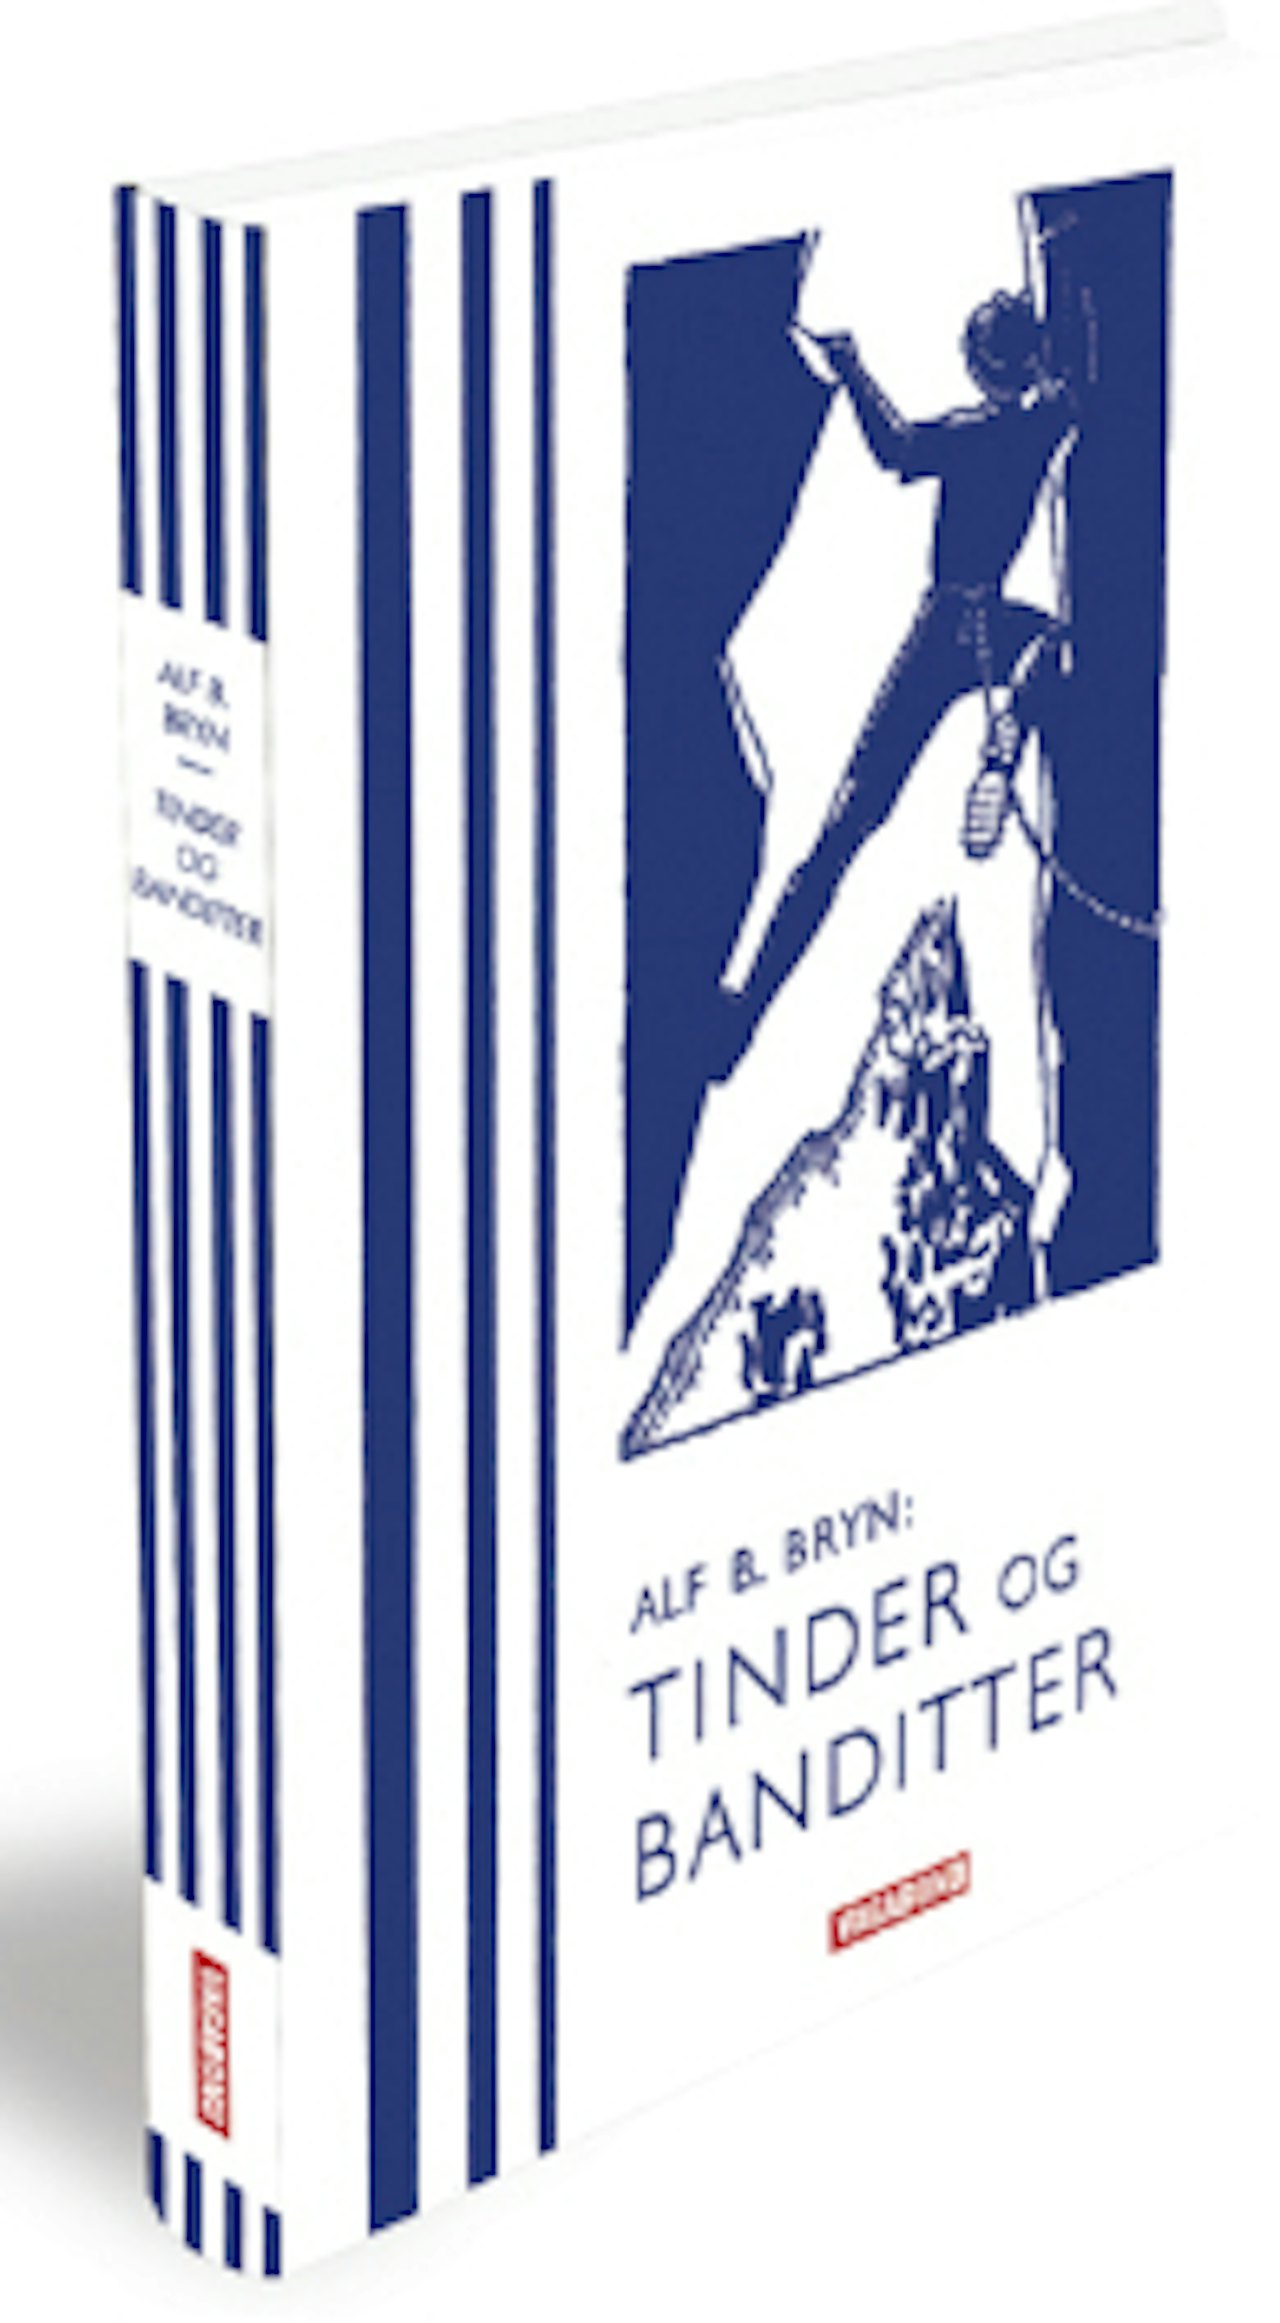 Tinder og Banditter av Alf Bryn (Vagabond forlag, 2010)